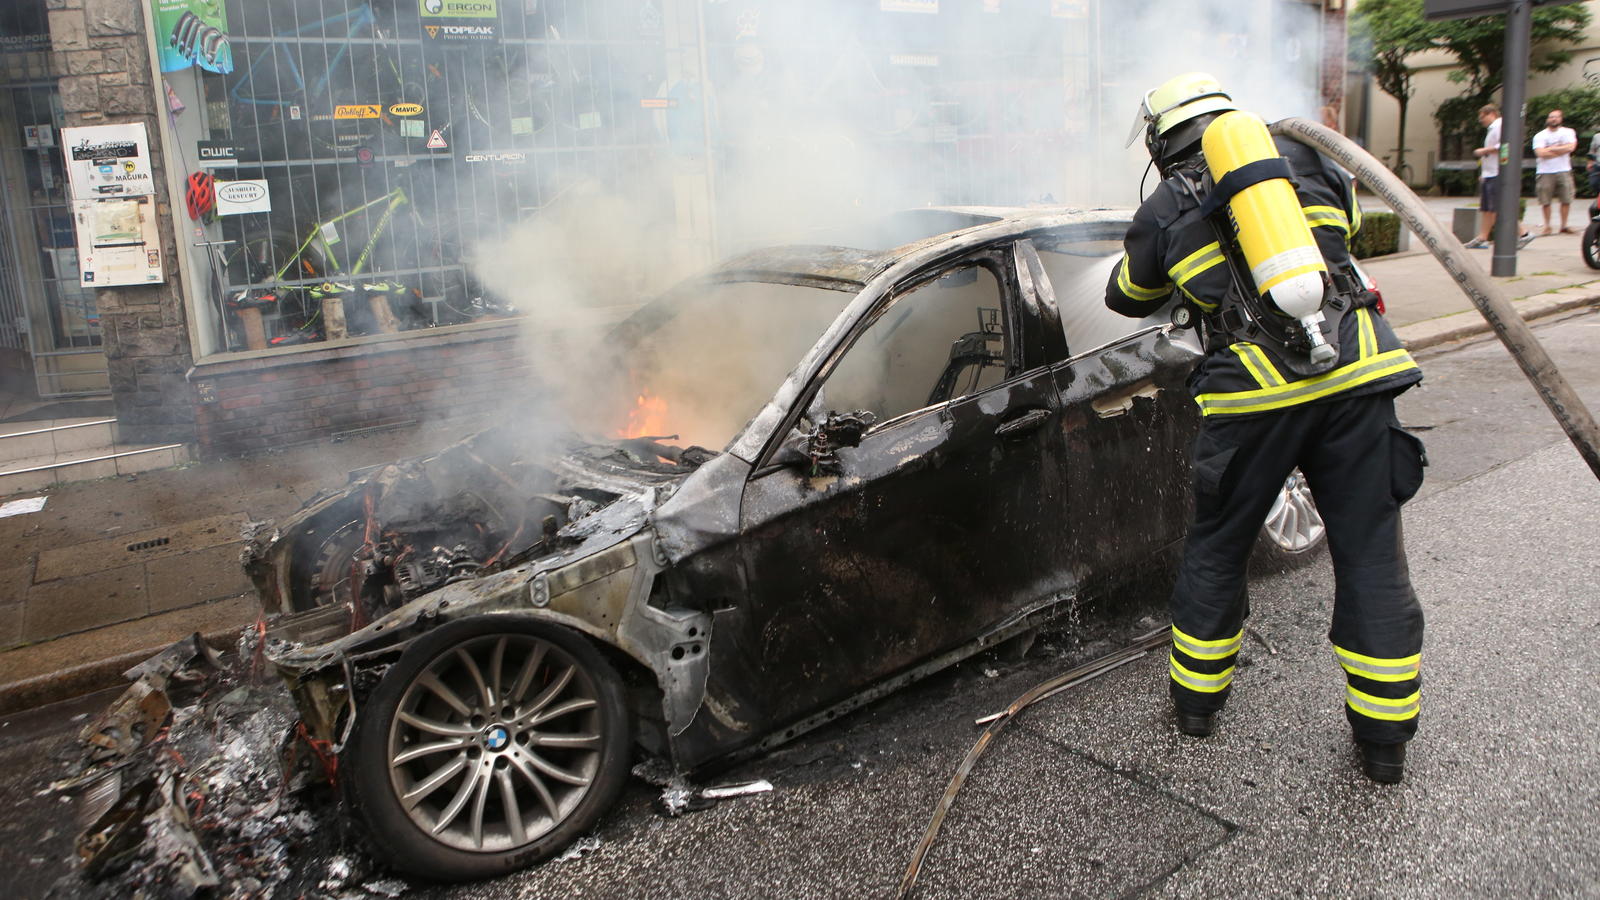 ARCHIV - Ein Feuerwehrmann löscht am 07.07.2017 in Hamburg in Altona ein brennendes Auto. Am 07. und 08. Juli kamen in der Hansestadt die Regierungschefs der führenden Industrienationen zum G20-Gipfel zusammen - im Umfeld des Treffens kam es zu gewal